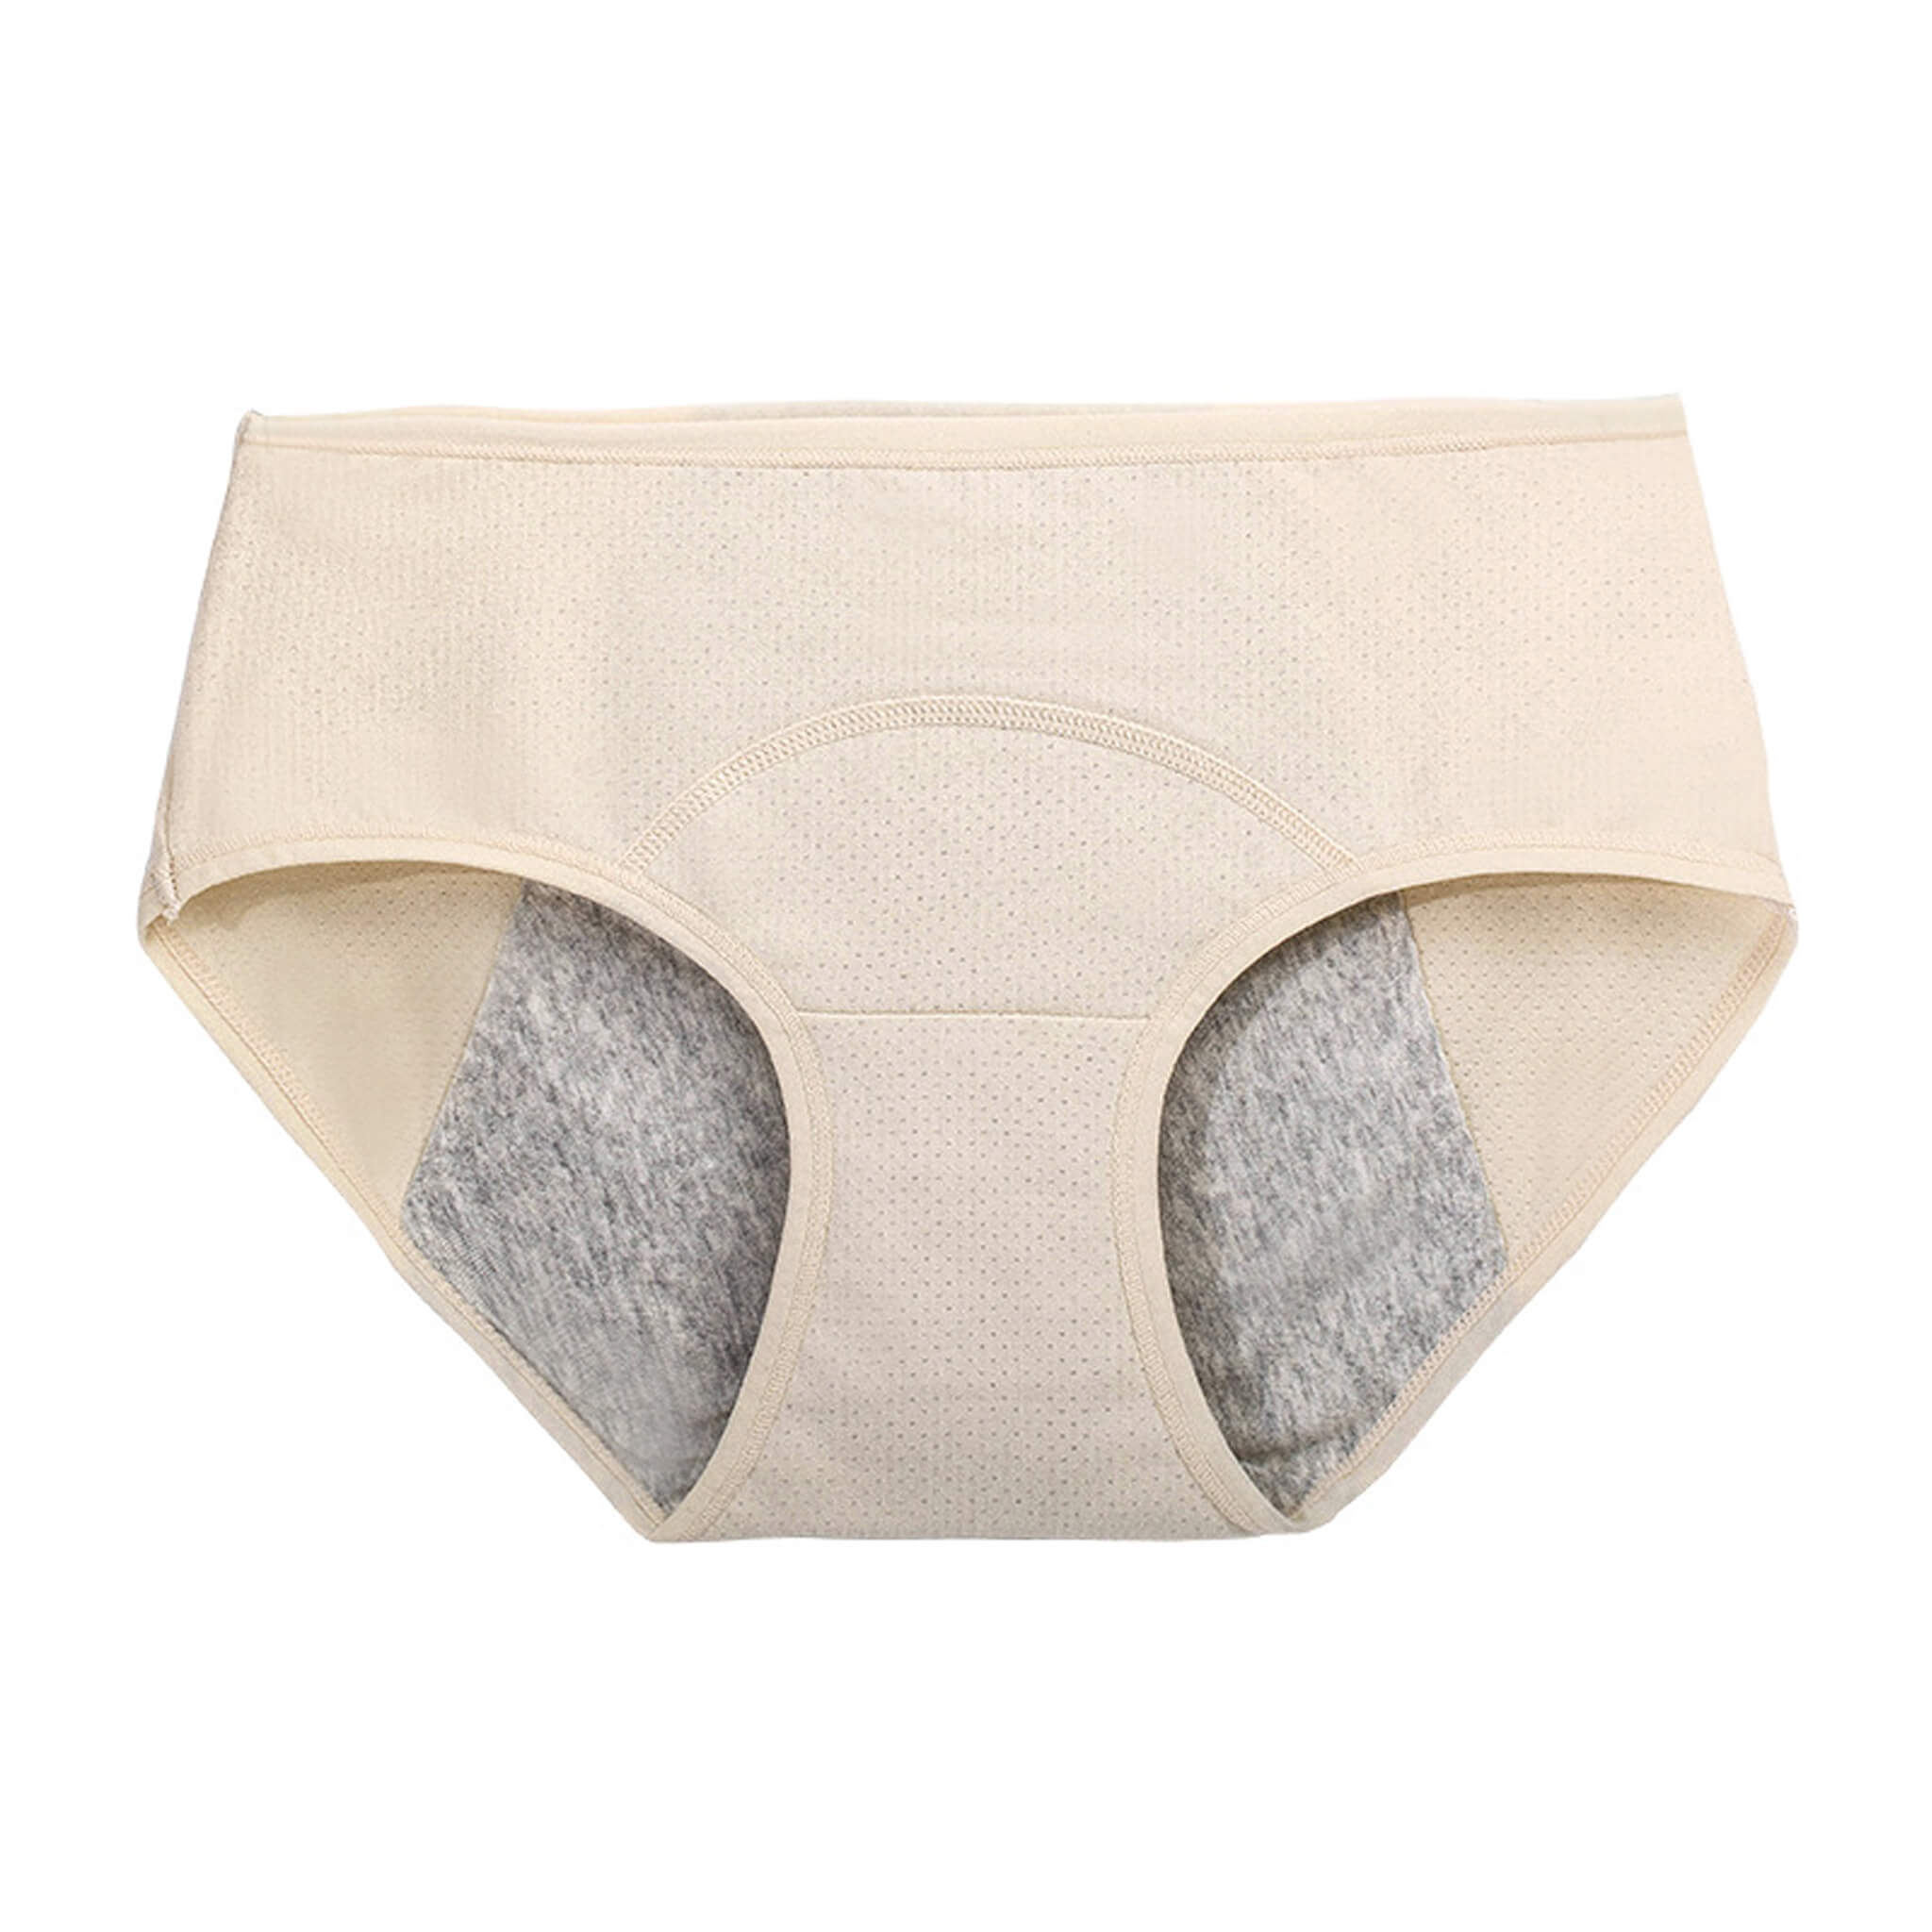 Peddon Katy Leakproof Period Underwear